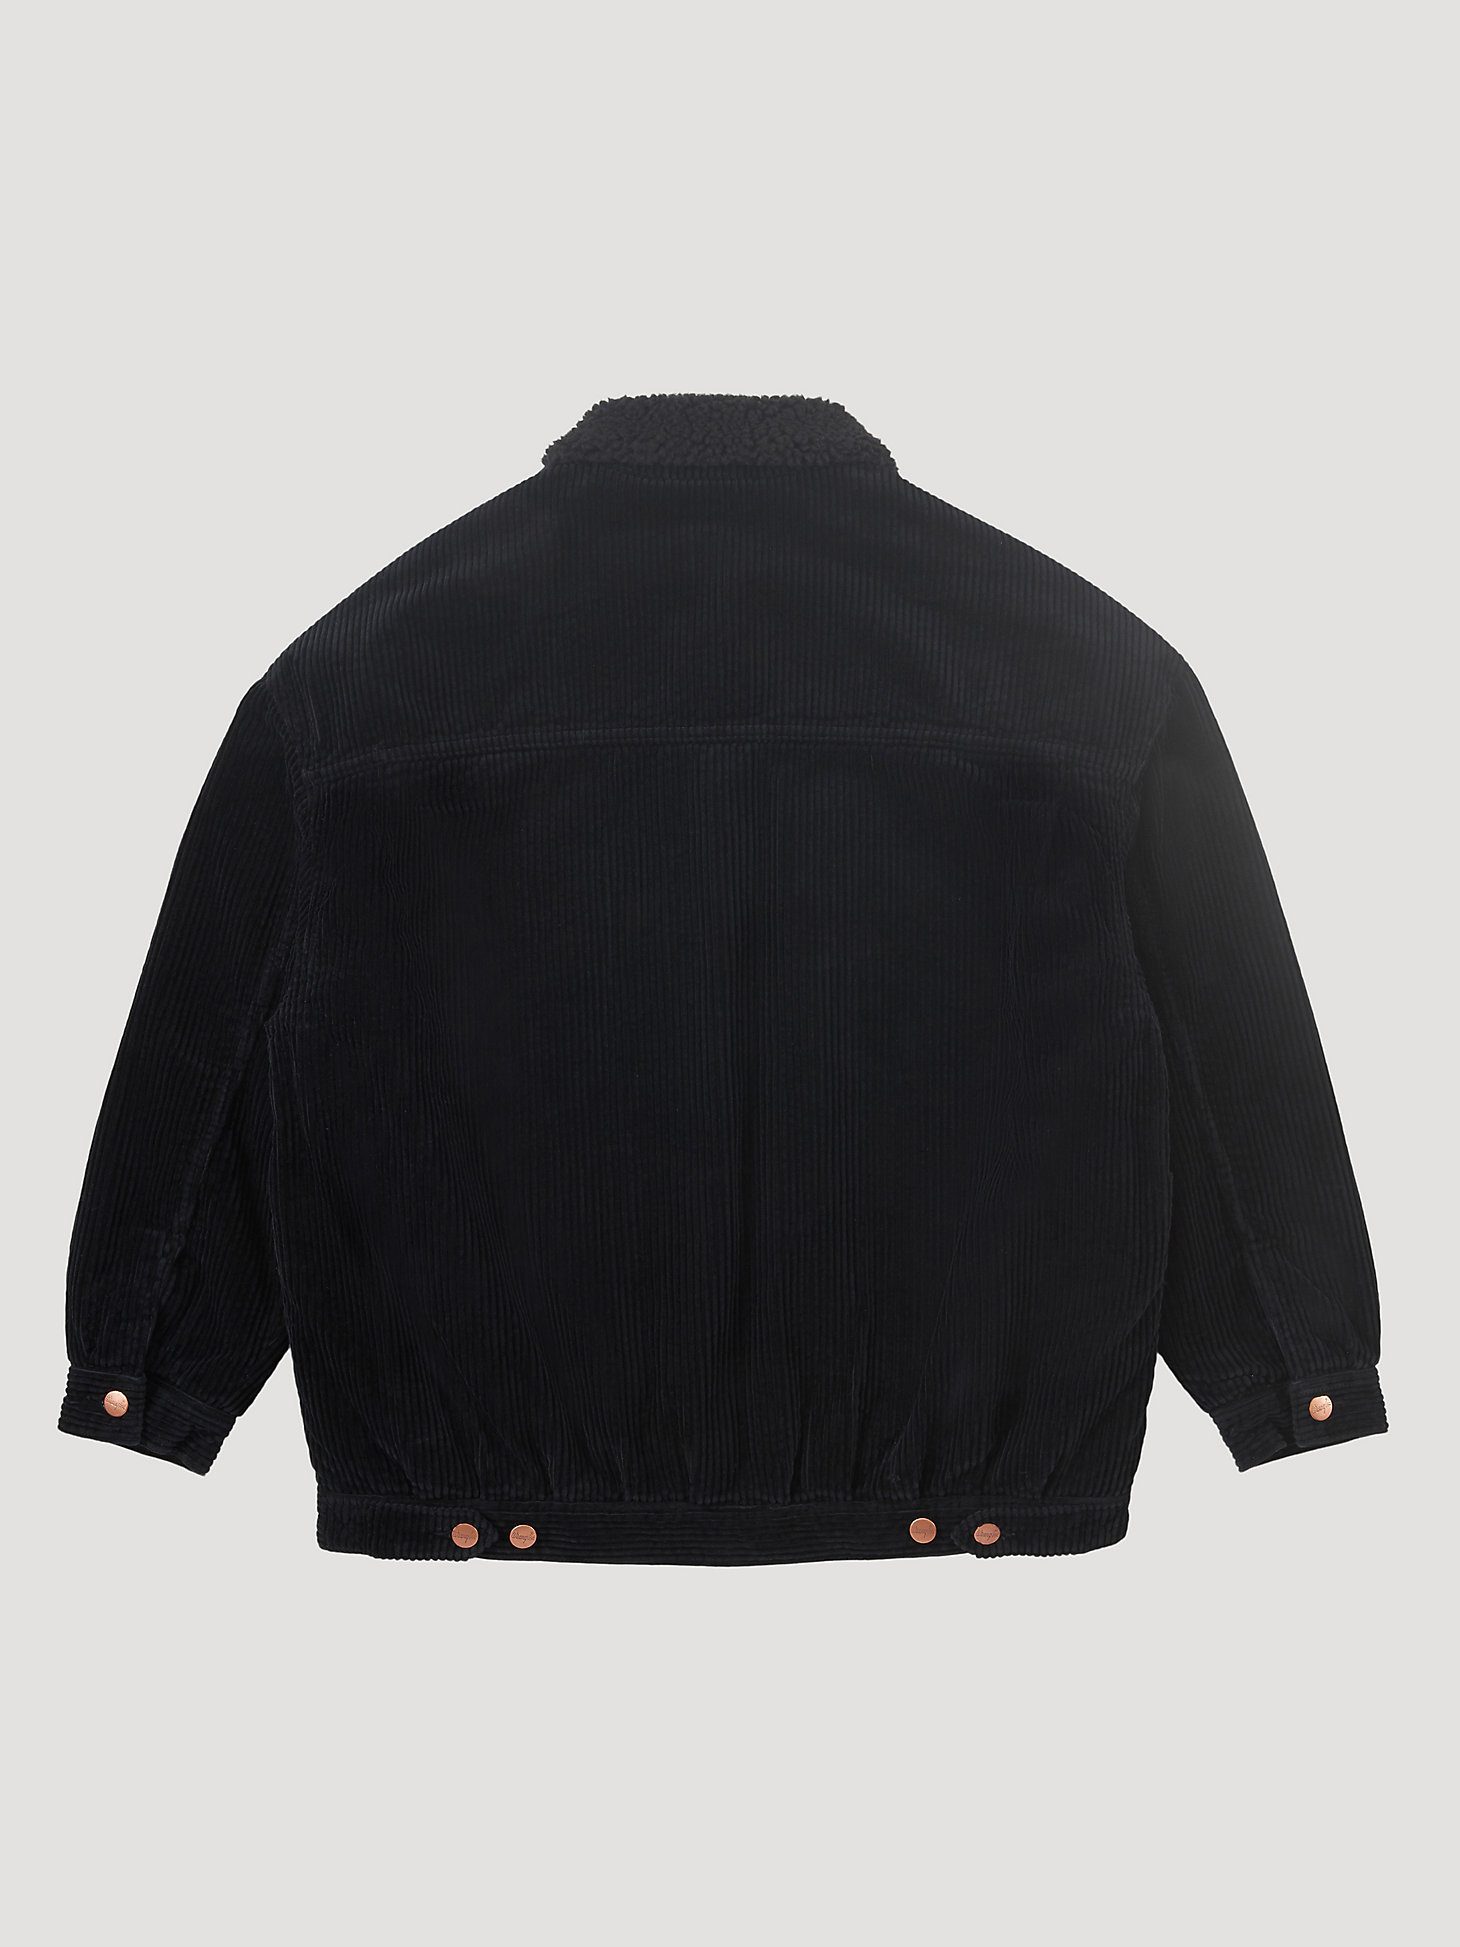 Women's Wrangler® Sherpa '80s Jacket in Caviar Black alternative view 8